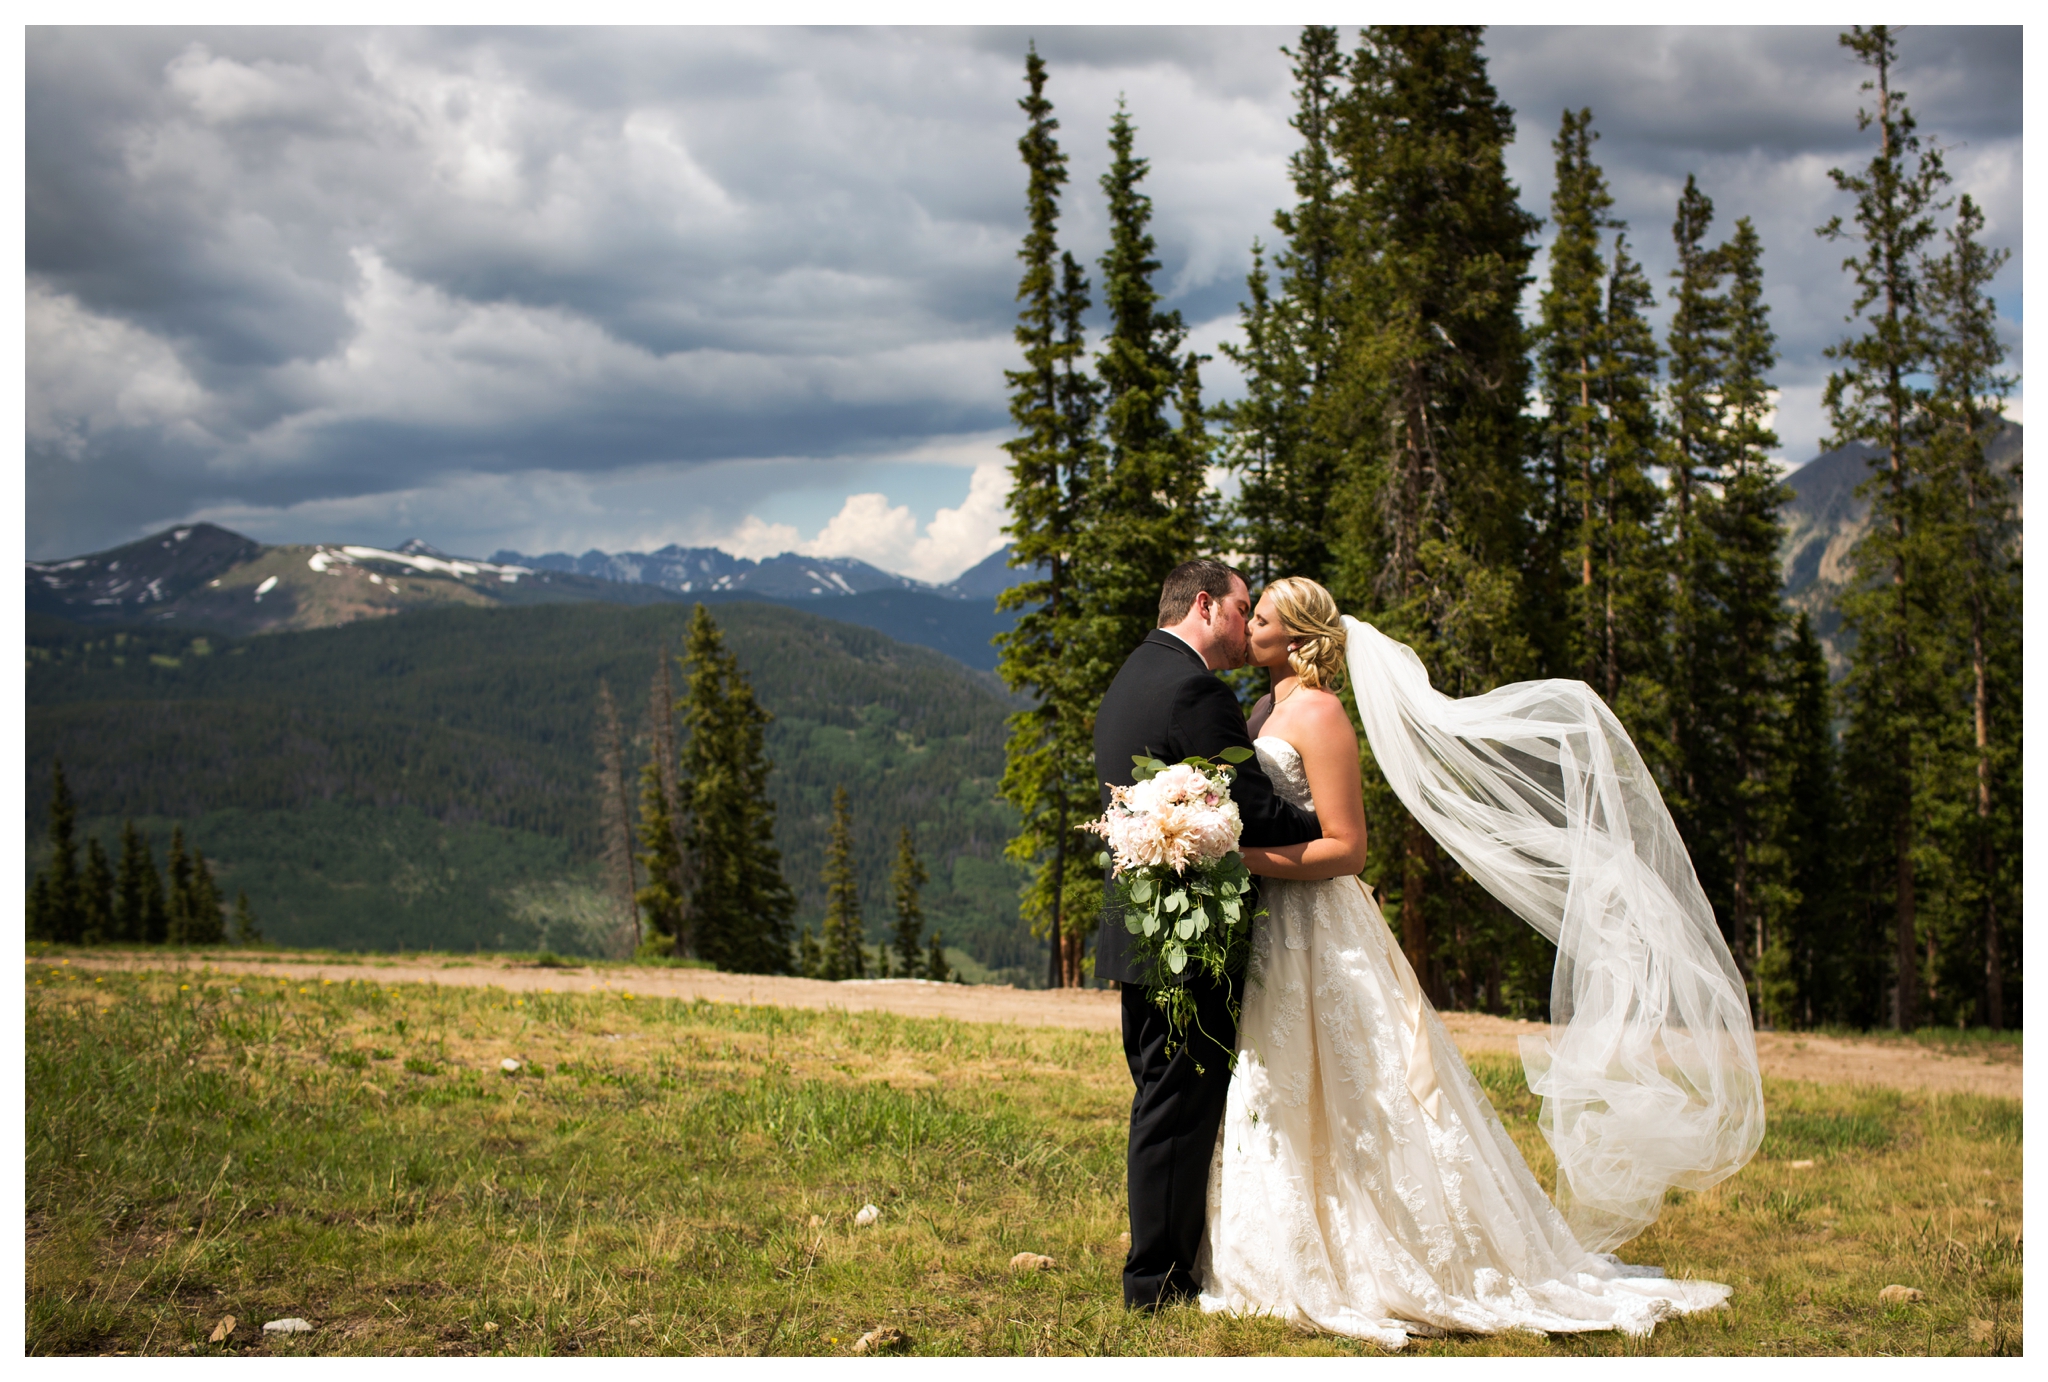 Copper mountain wedding photos by Colorado mountain wedding photographer Plum Pretty Photography